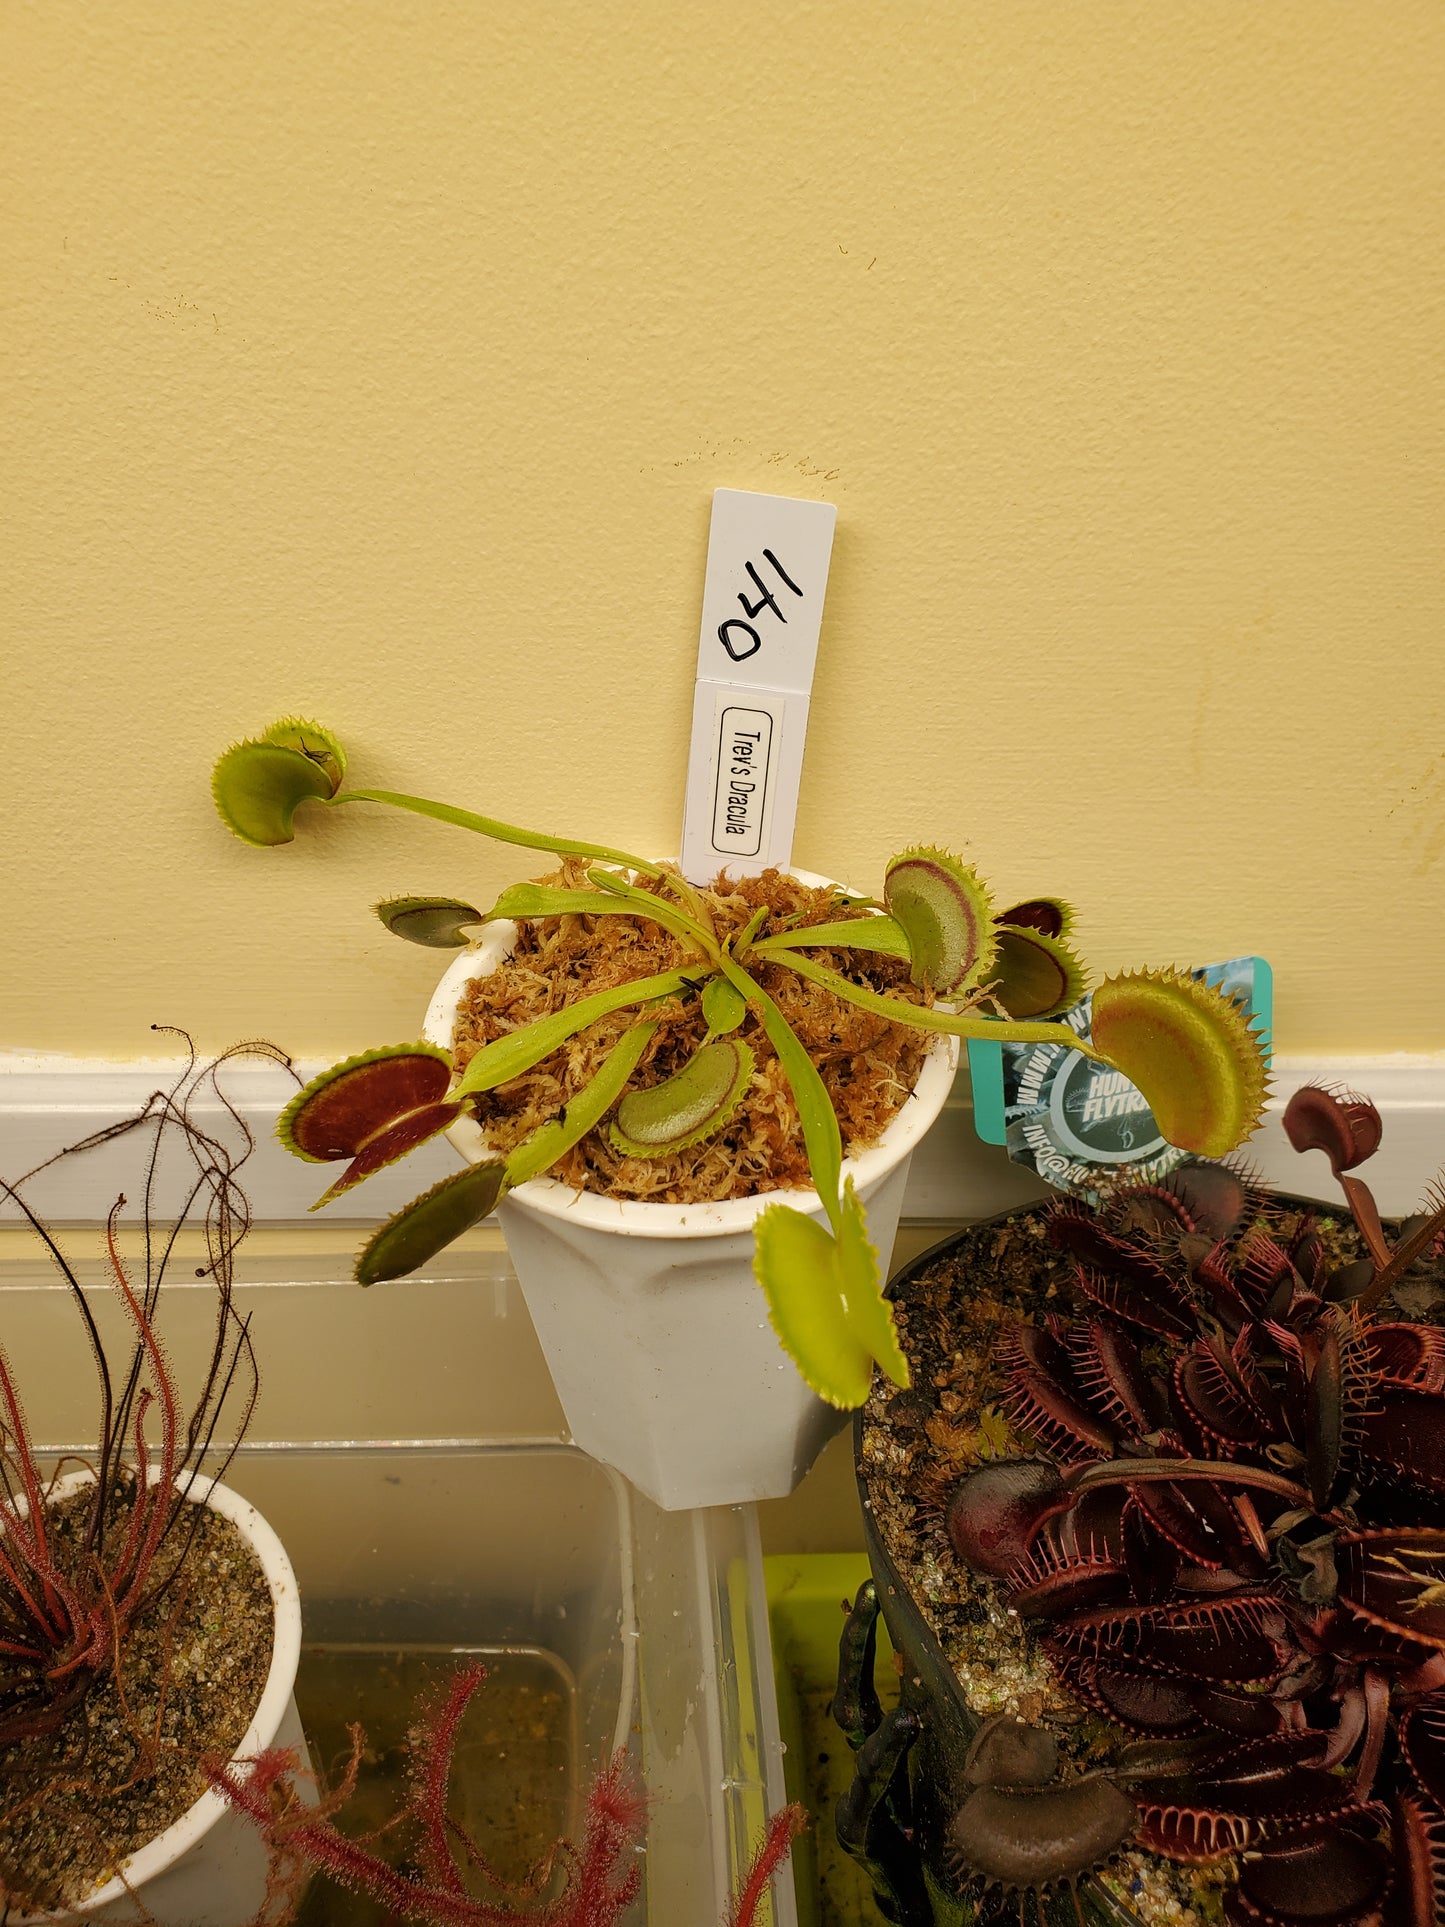 Get me that plant - 041 - Trevs Dracula Venus Flytrap Carnivorous plant